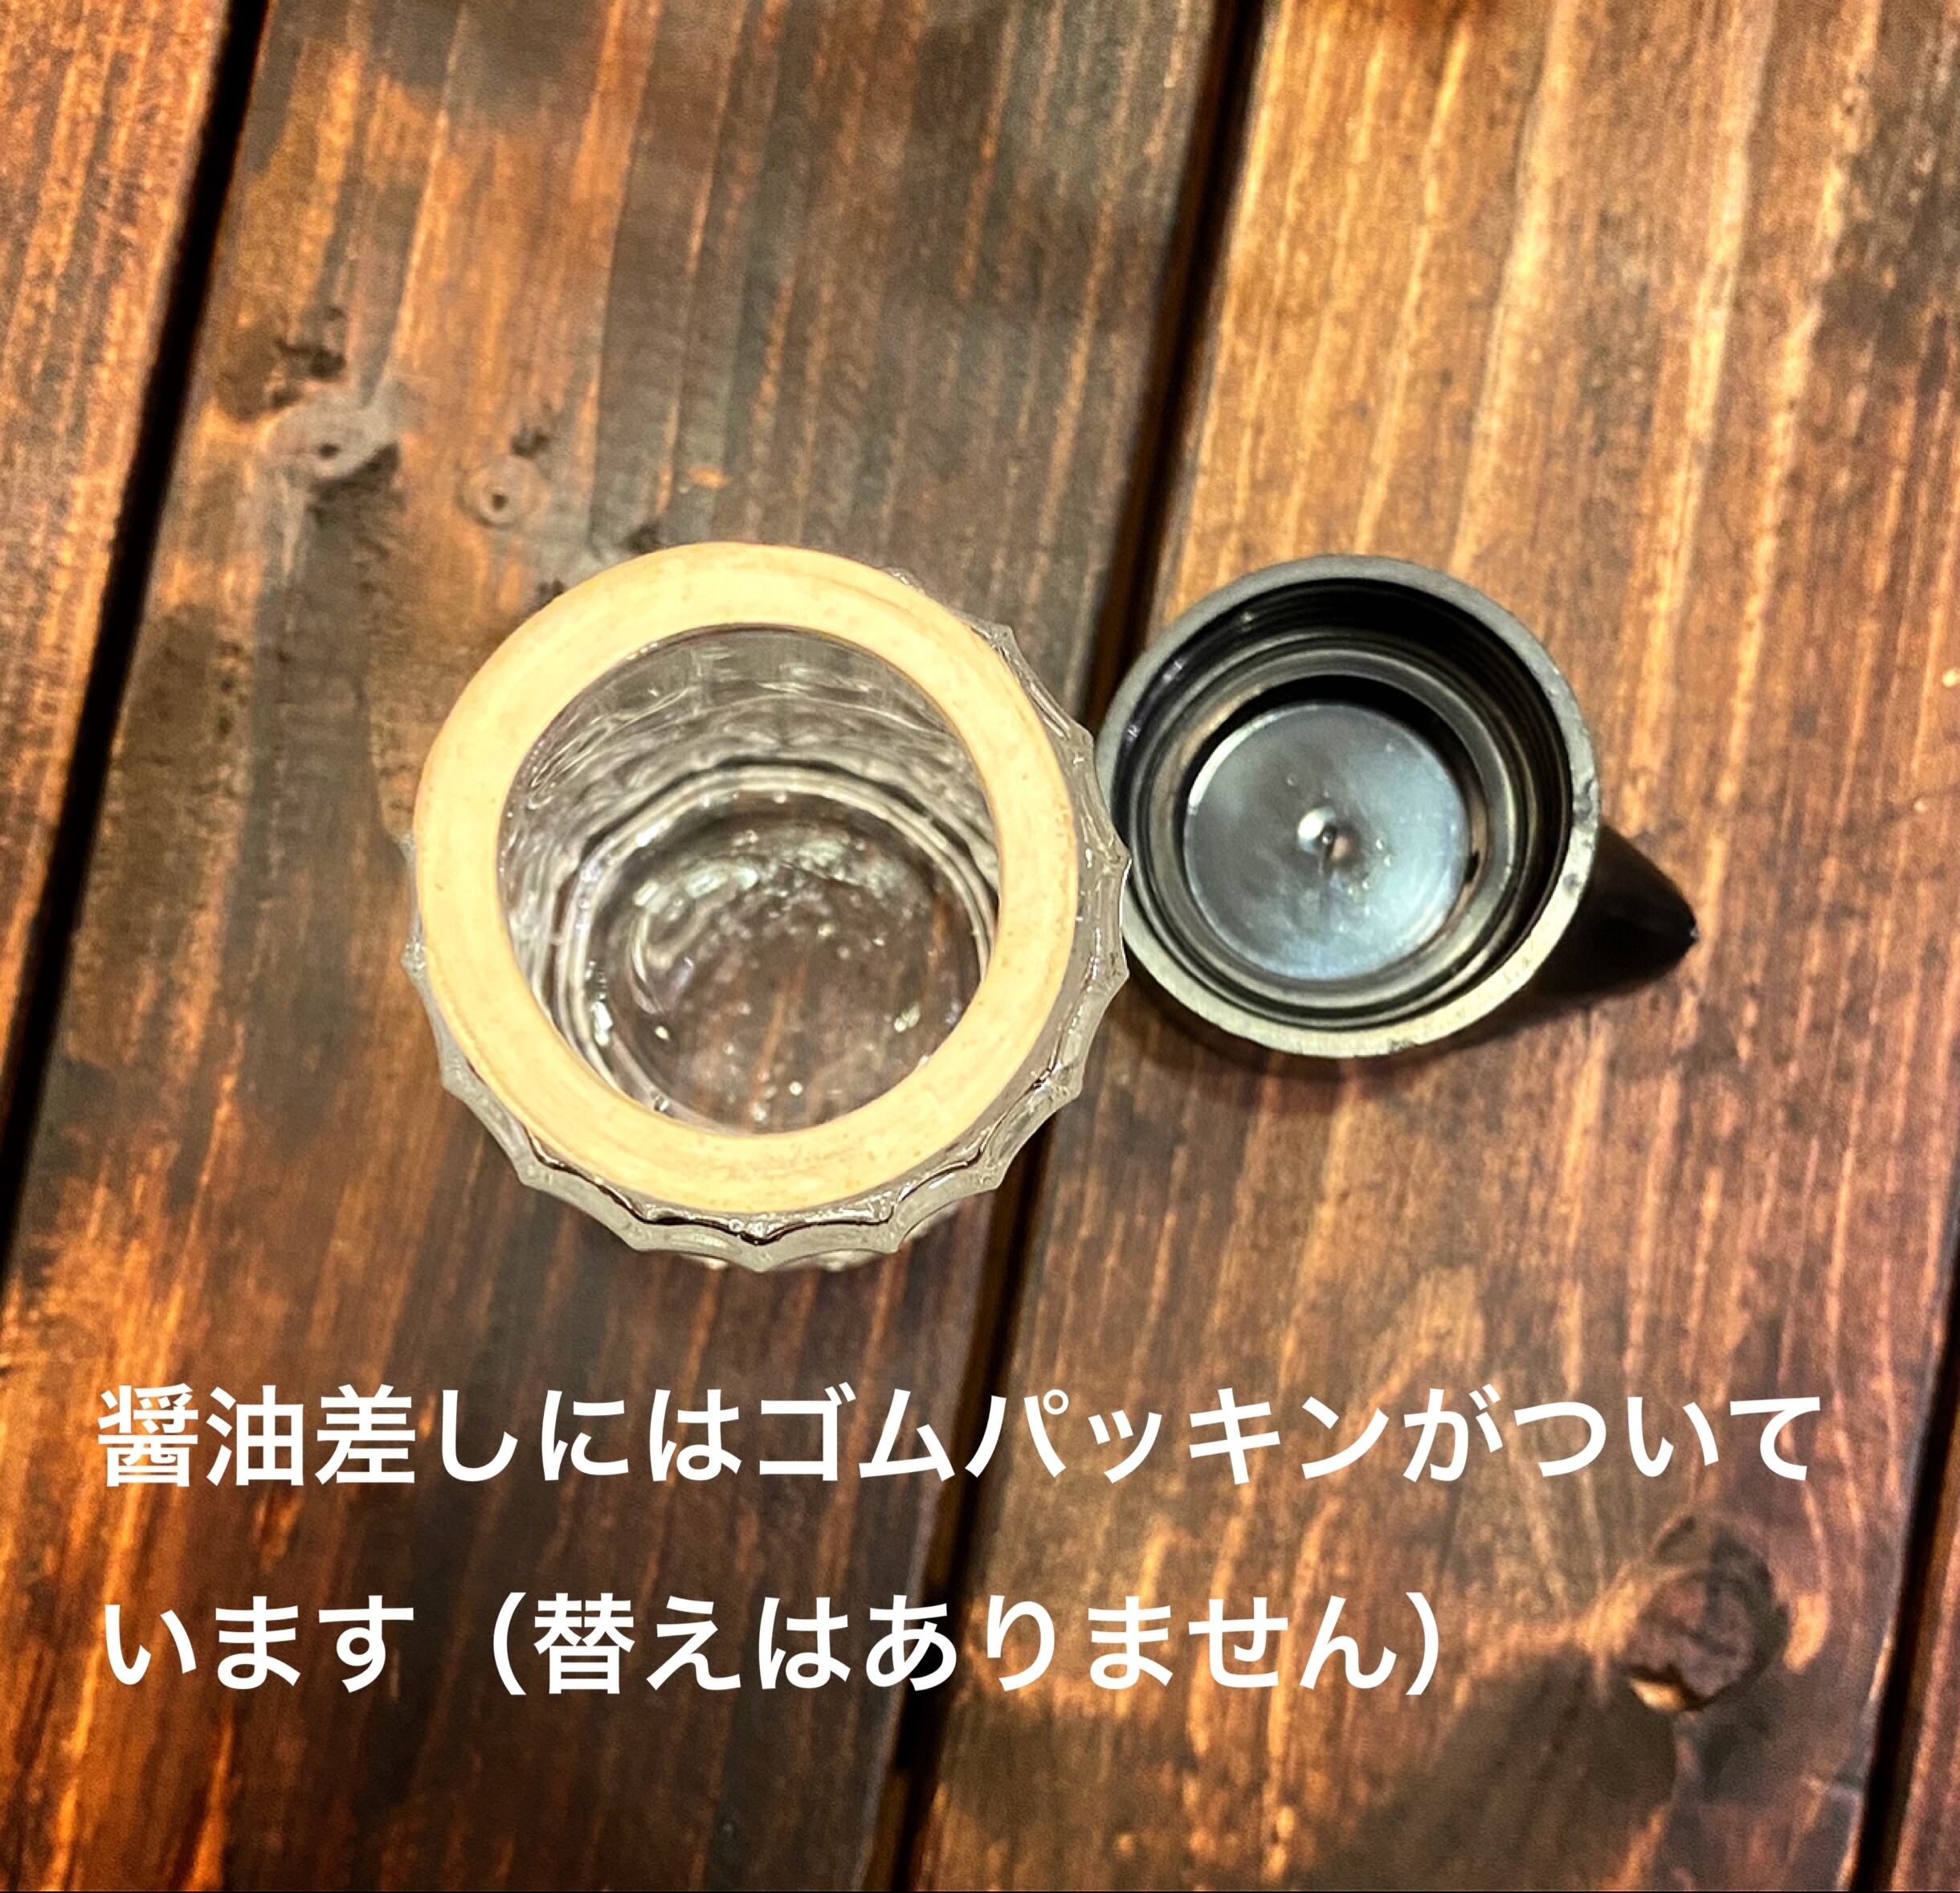 デザインガラスのレトロ調味料入れ【醤油/ソース】 | 松屋陶器